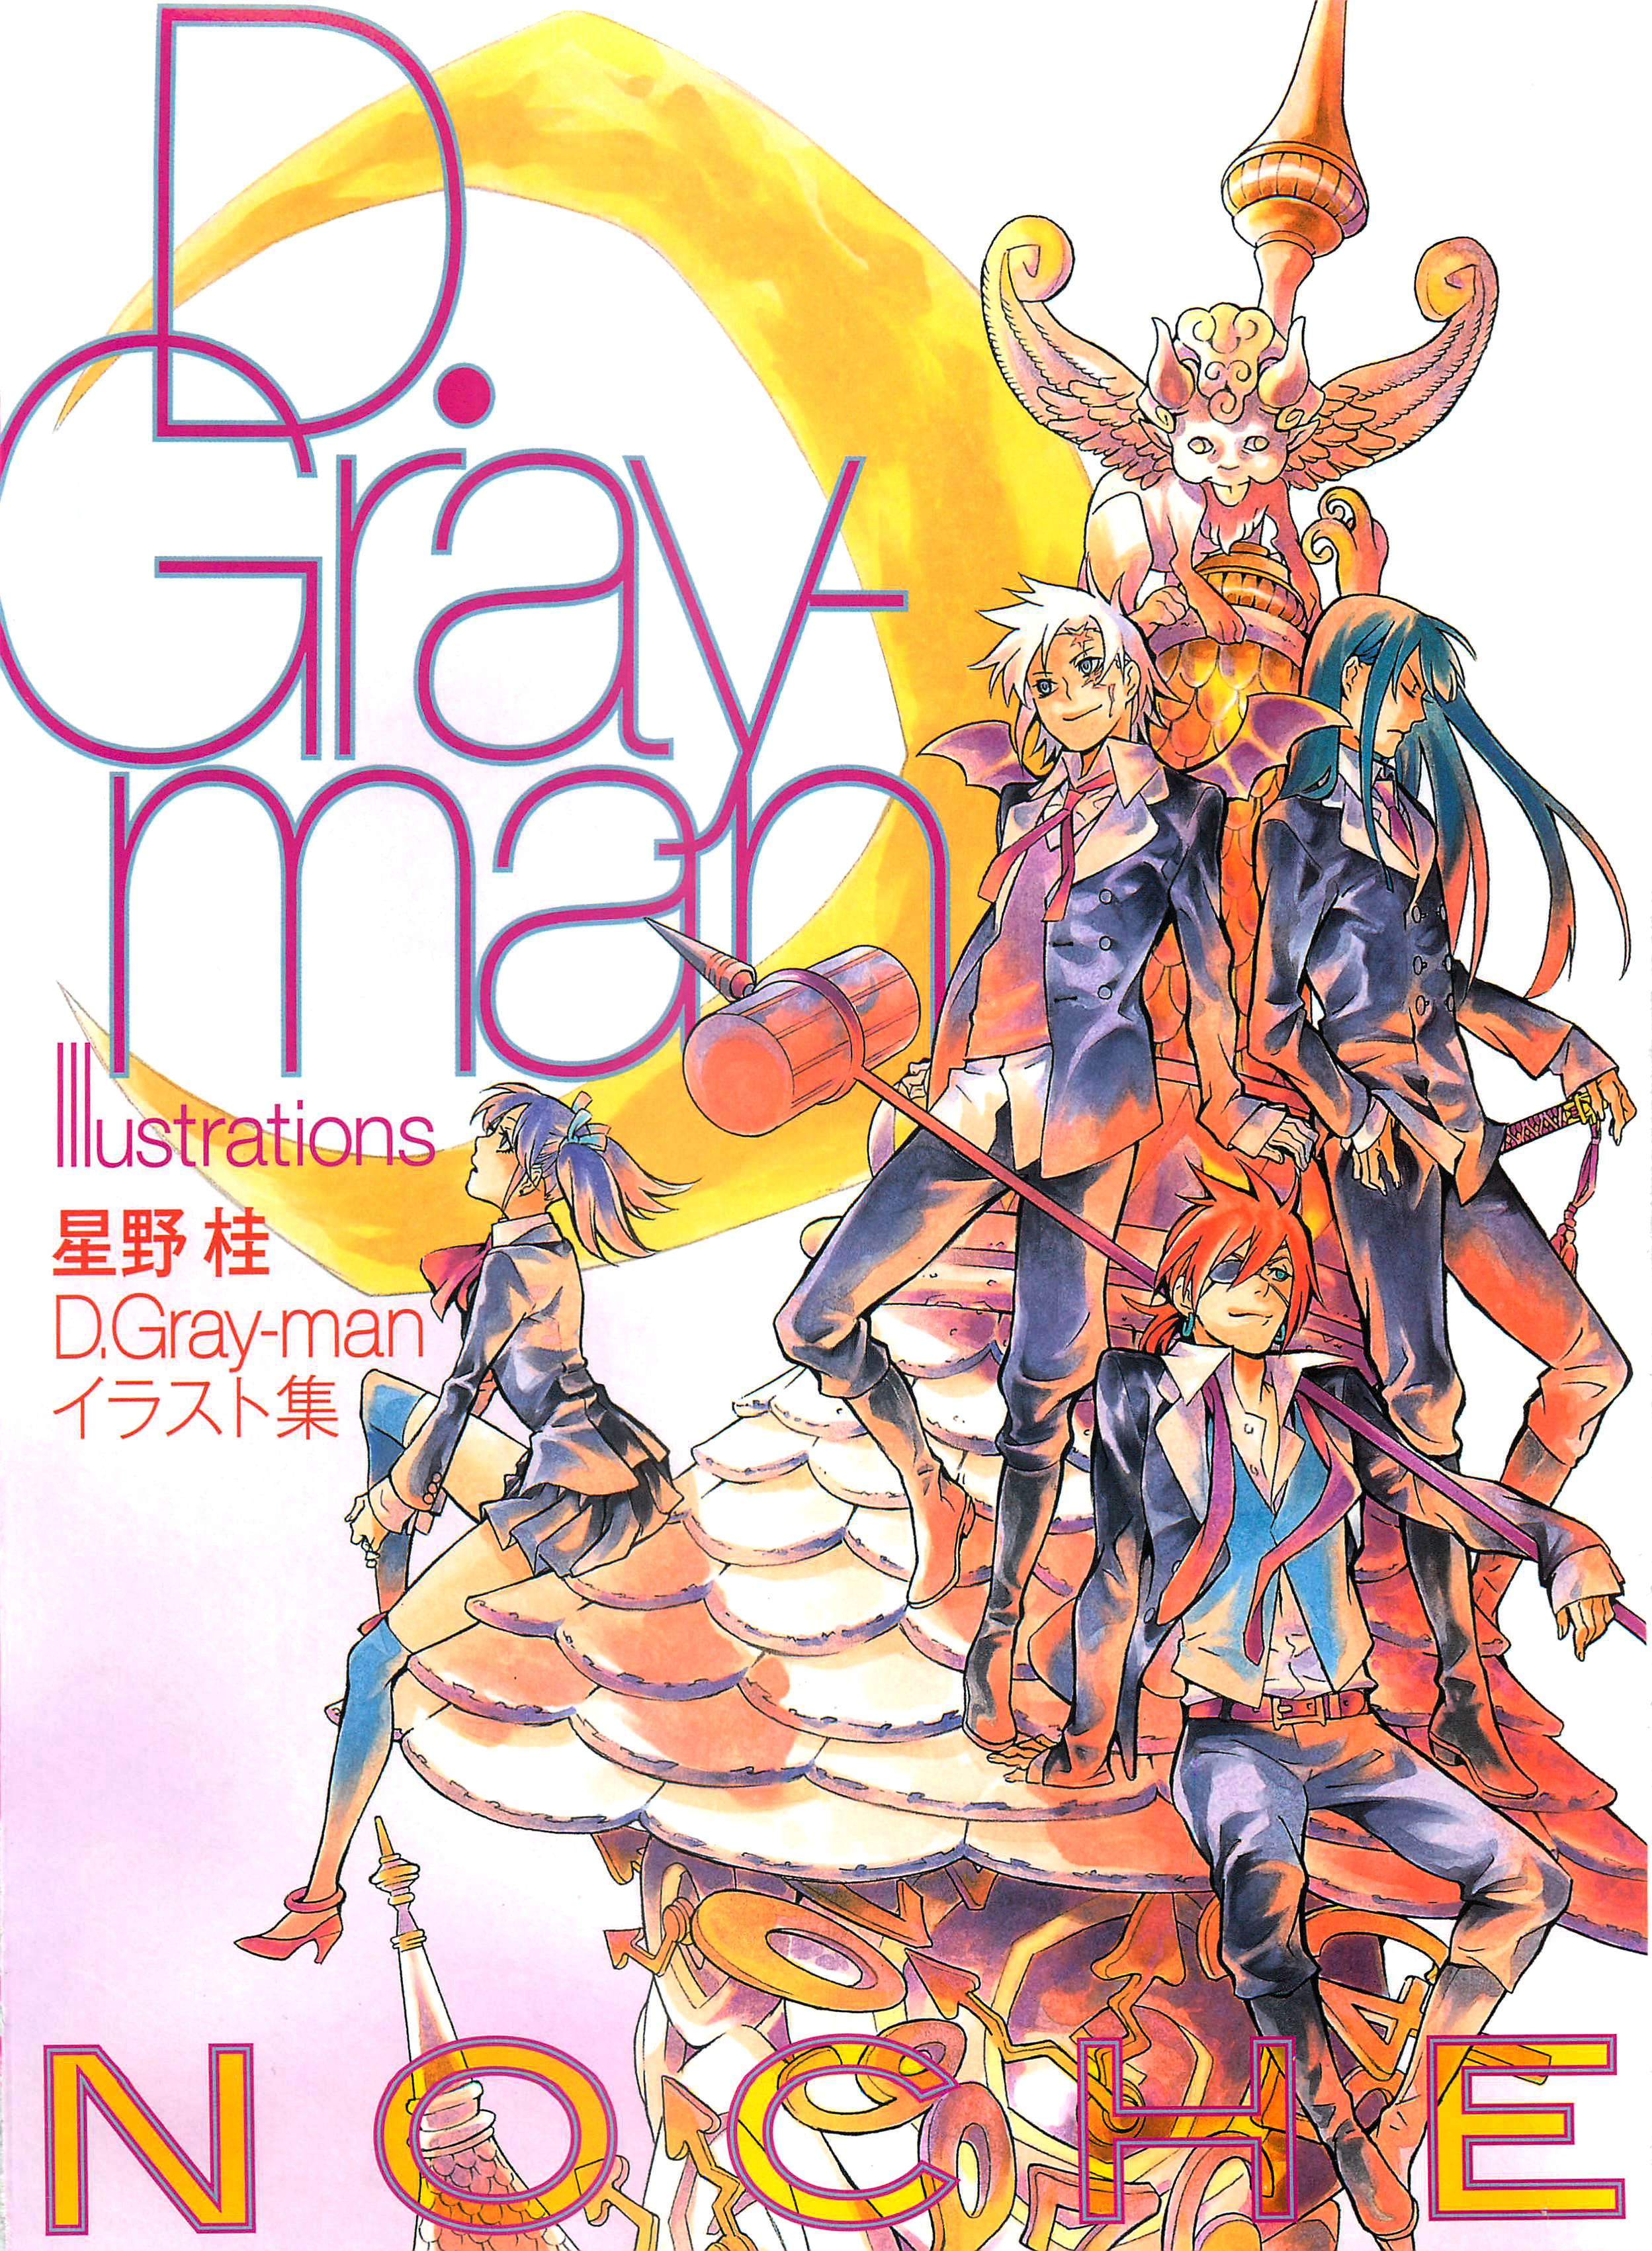 Noche - D.Gray-man Illustrations Artbook - Zerochan Anime Image Board